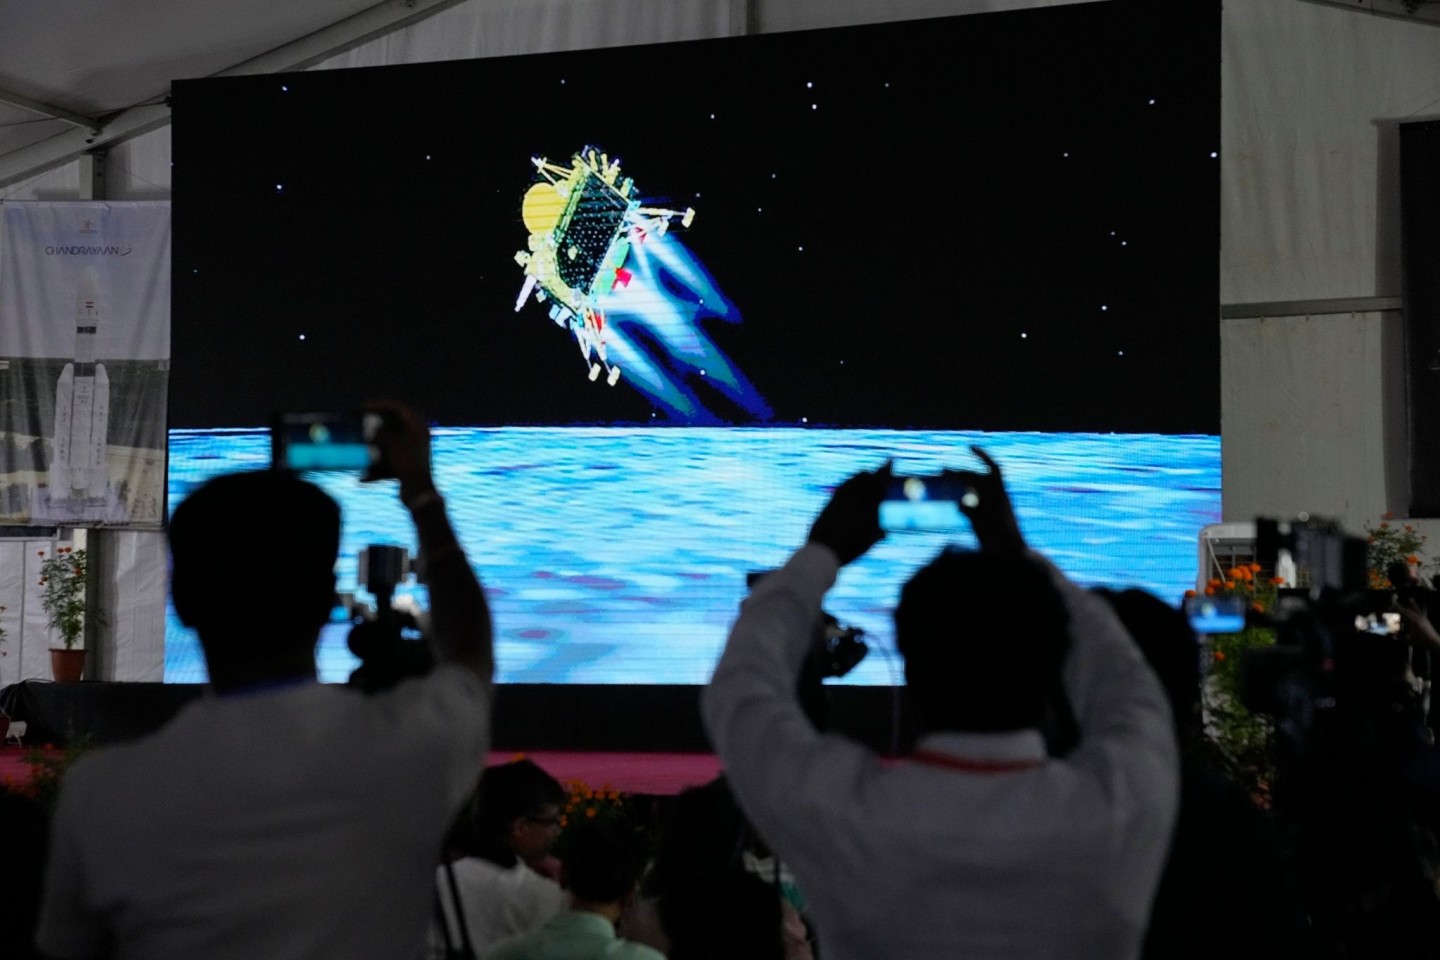 Jubel bricht während der Live-Übertragung der Landung des Raumschiffs in der ISRO-Einrichtung im indischen Bengaluru aus, als «Chandrayaan-3» auf dem Mond landet.